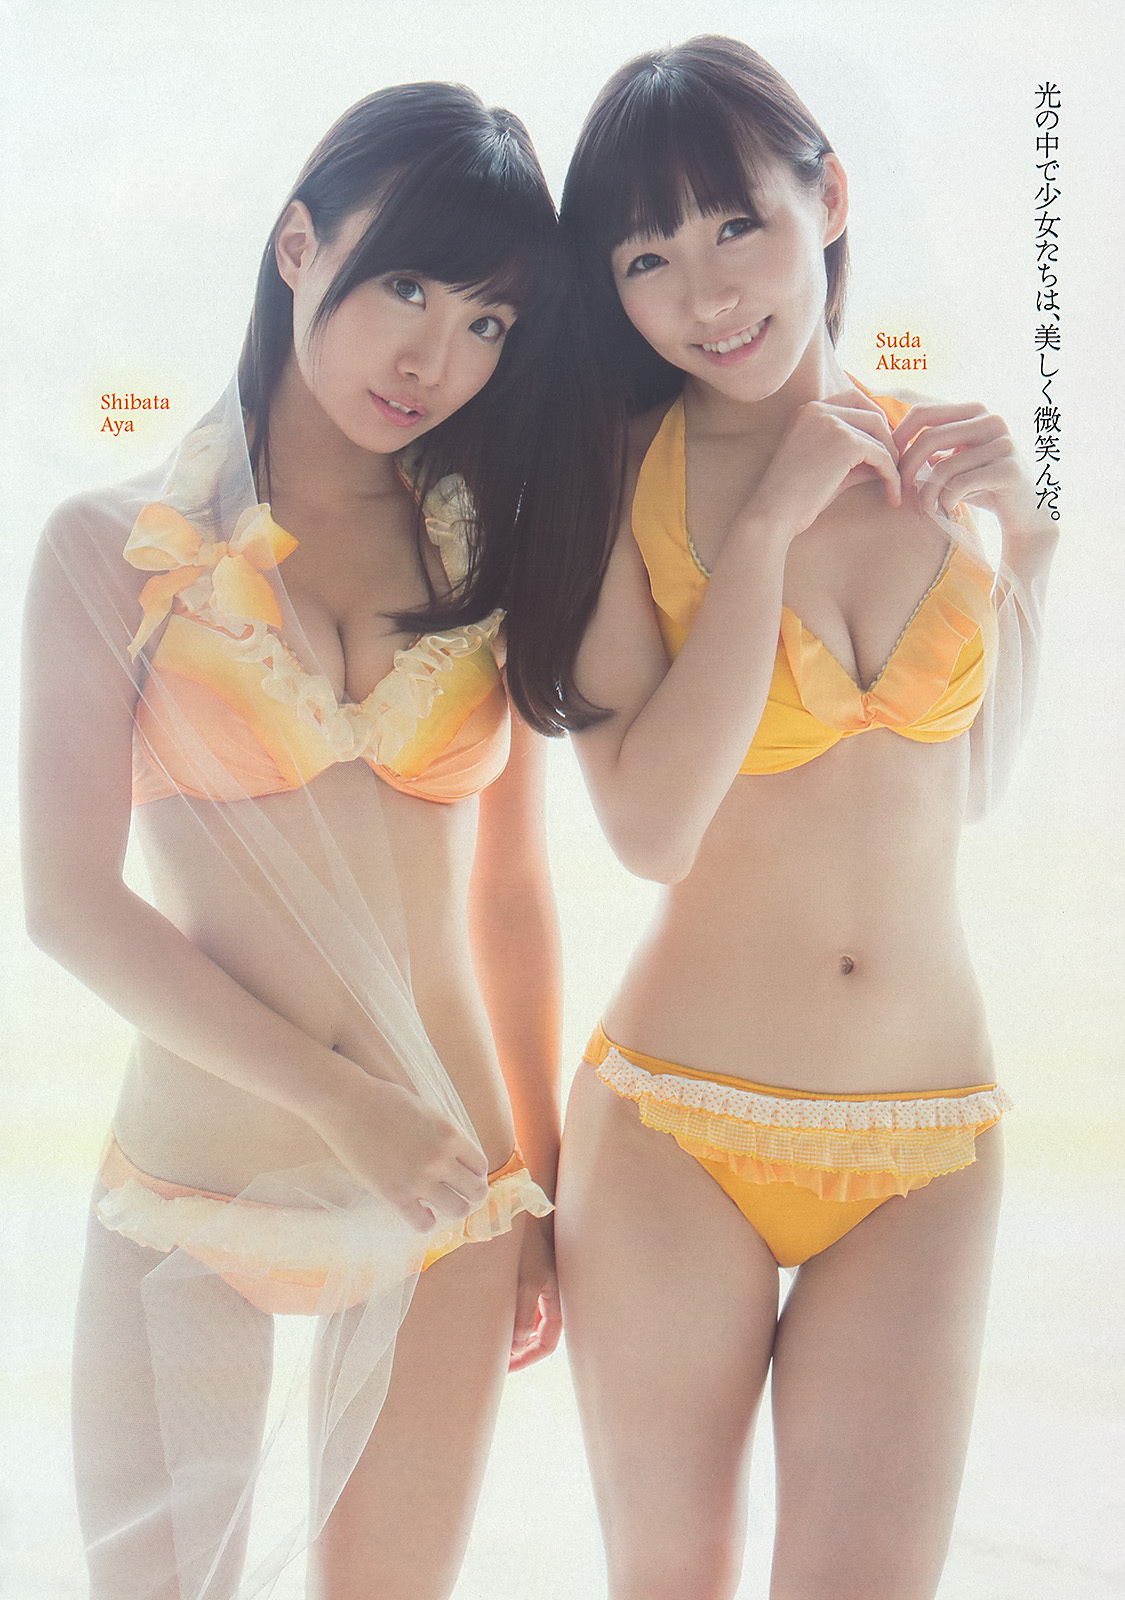 [Weekly Playboy]No.41 SKE48模特女孩市川美织高见奈央长崎真友子铃木友菜池田裕子